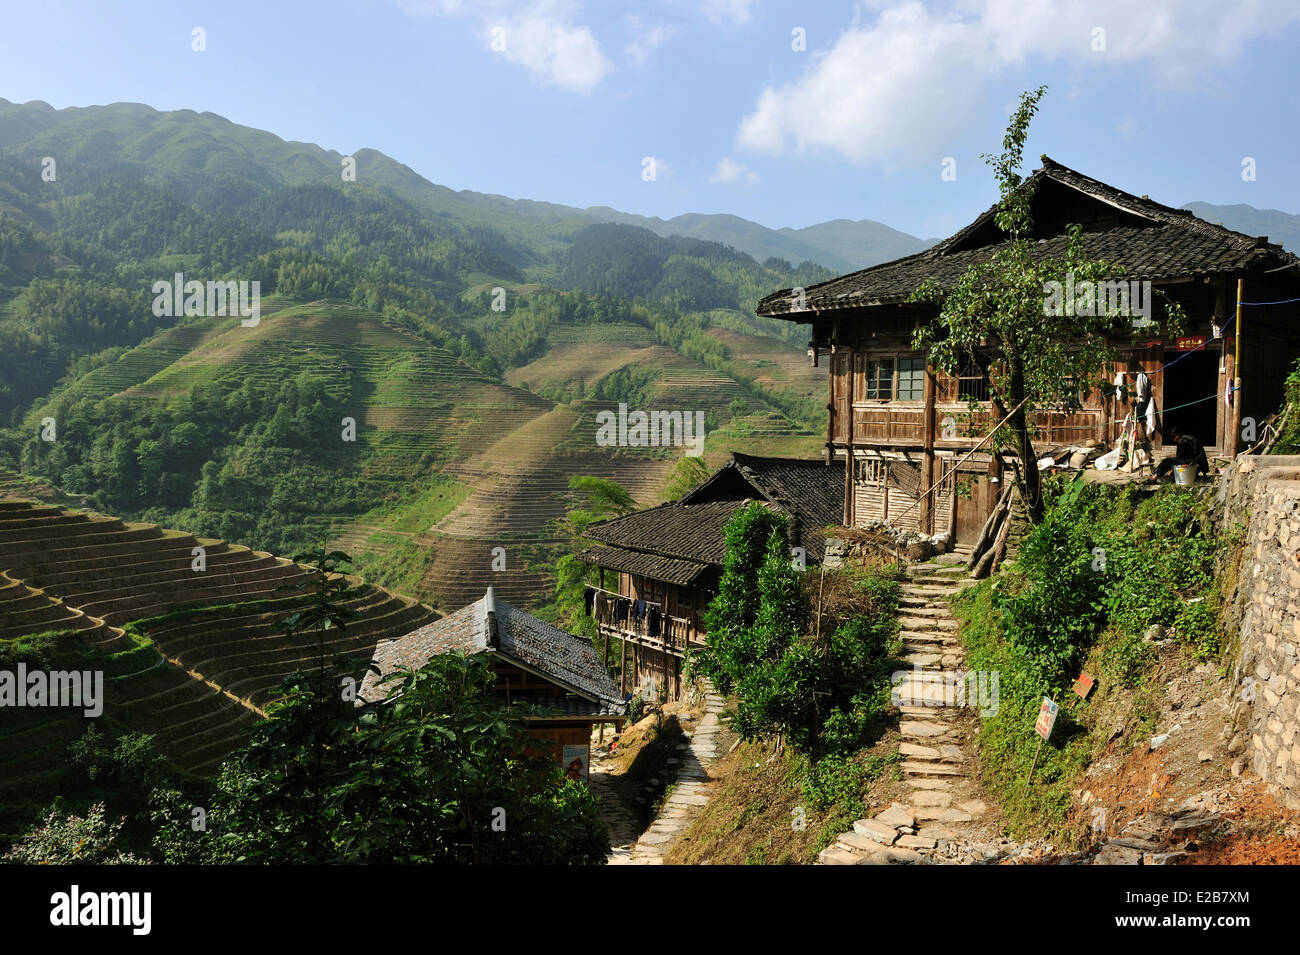 China, Guangxi Province, Longsheng, rice terraces at Longji, Tian Tou Zhai village Stock Photo